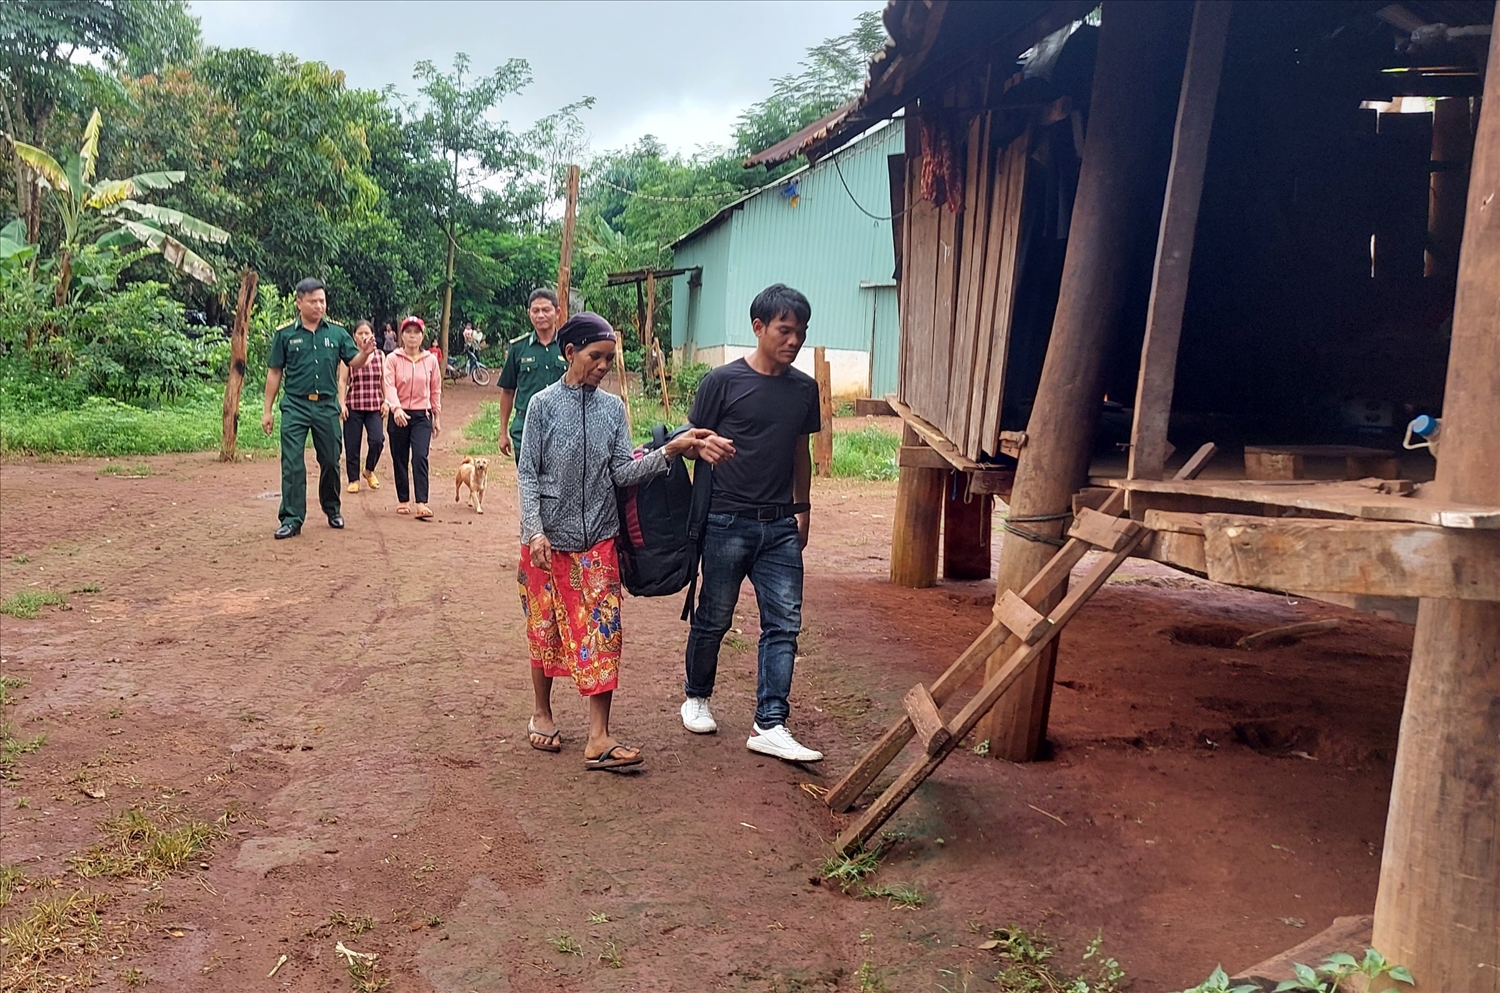 Một nạn nhân ở làng Kloong, xã Ia O, xã Ia Grai trở về sau những ngày bị cưỡng bức lao động ở Campuchia